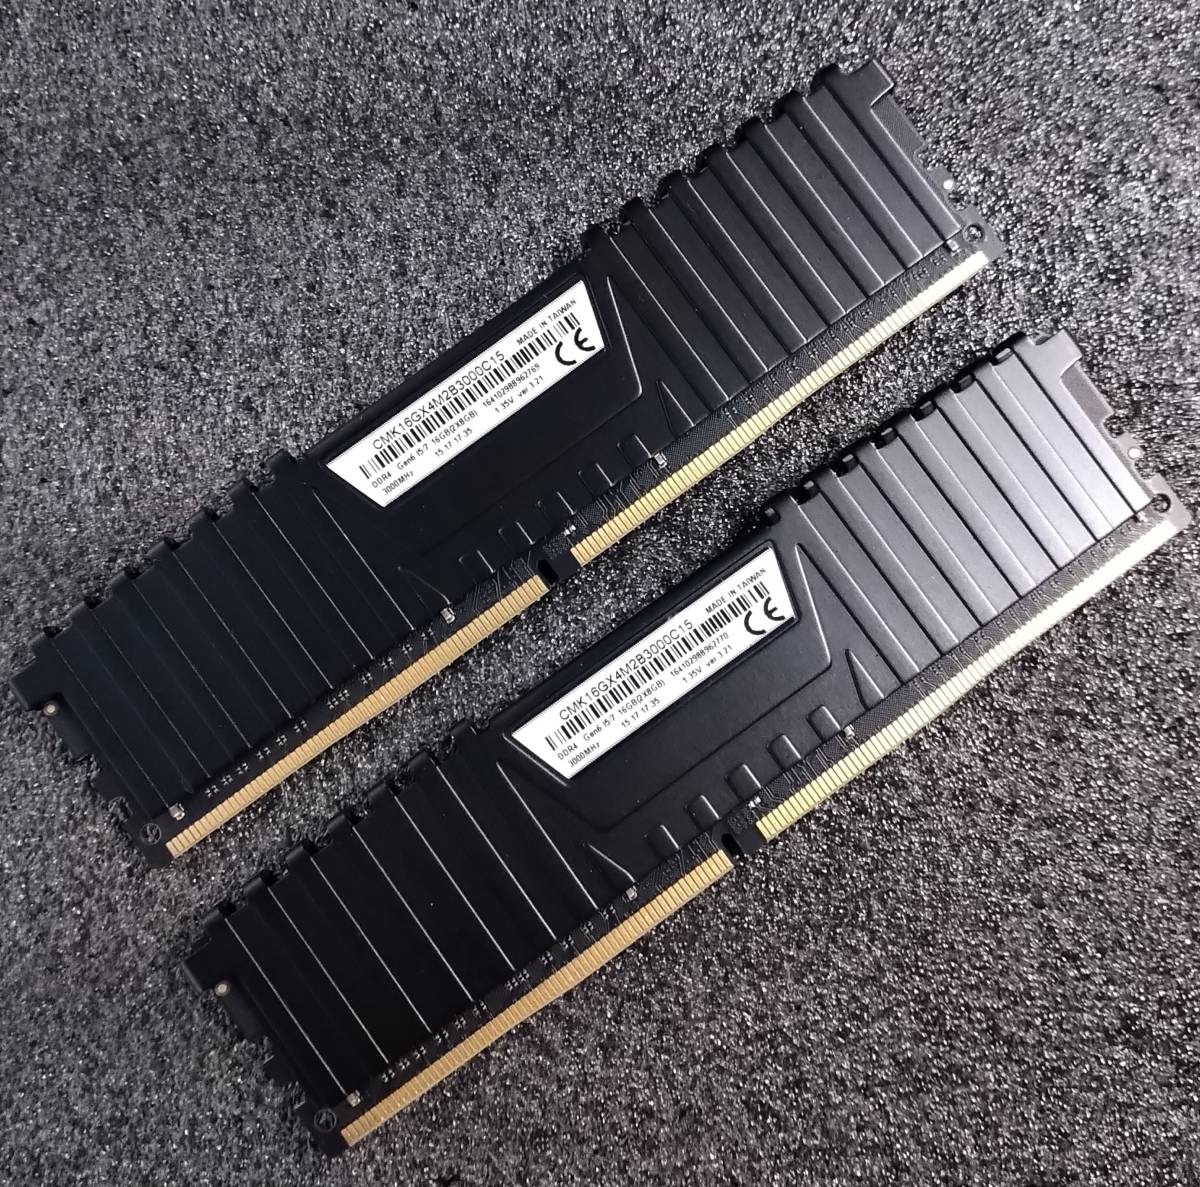 [ б/у ]DDR4 память 16GB(8GBx2) Corsair CMK16GX4M2B3000C15 коробка есть [DDR4-3000 PC4-24000]